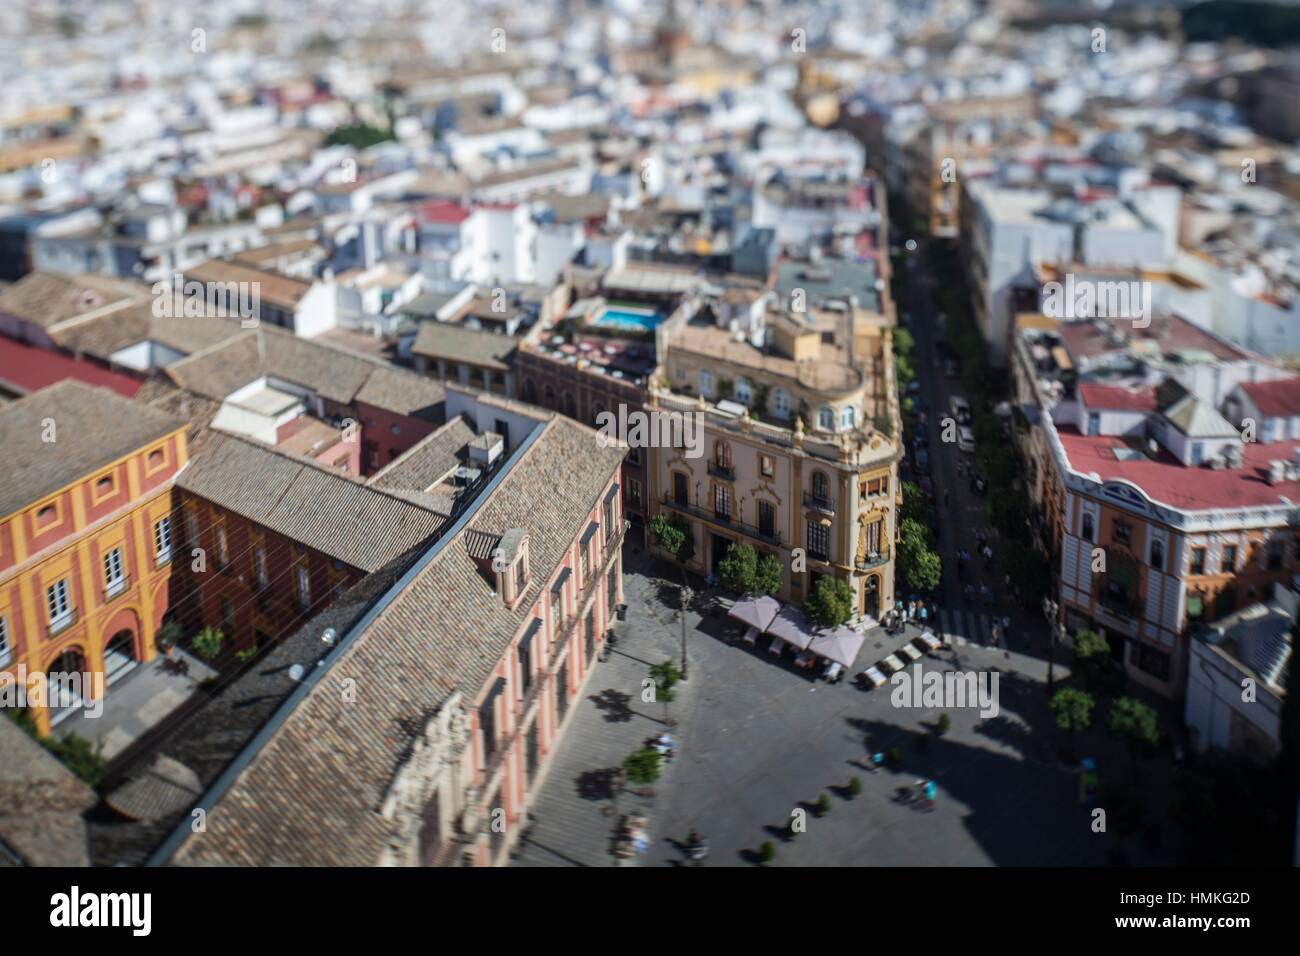 Nach Osten auf Sevilla Stadtzentrum von der Giralda Turm, Spanien. Geneigte Objektiv für eine geringere Schärfentiefe. Stockfoto